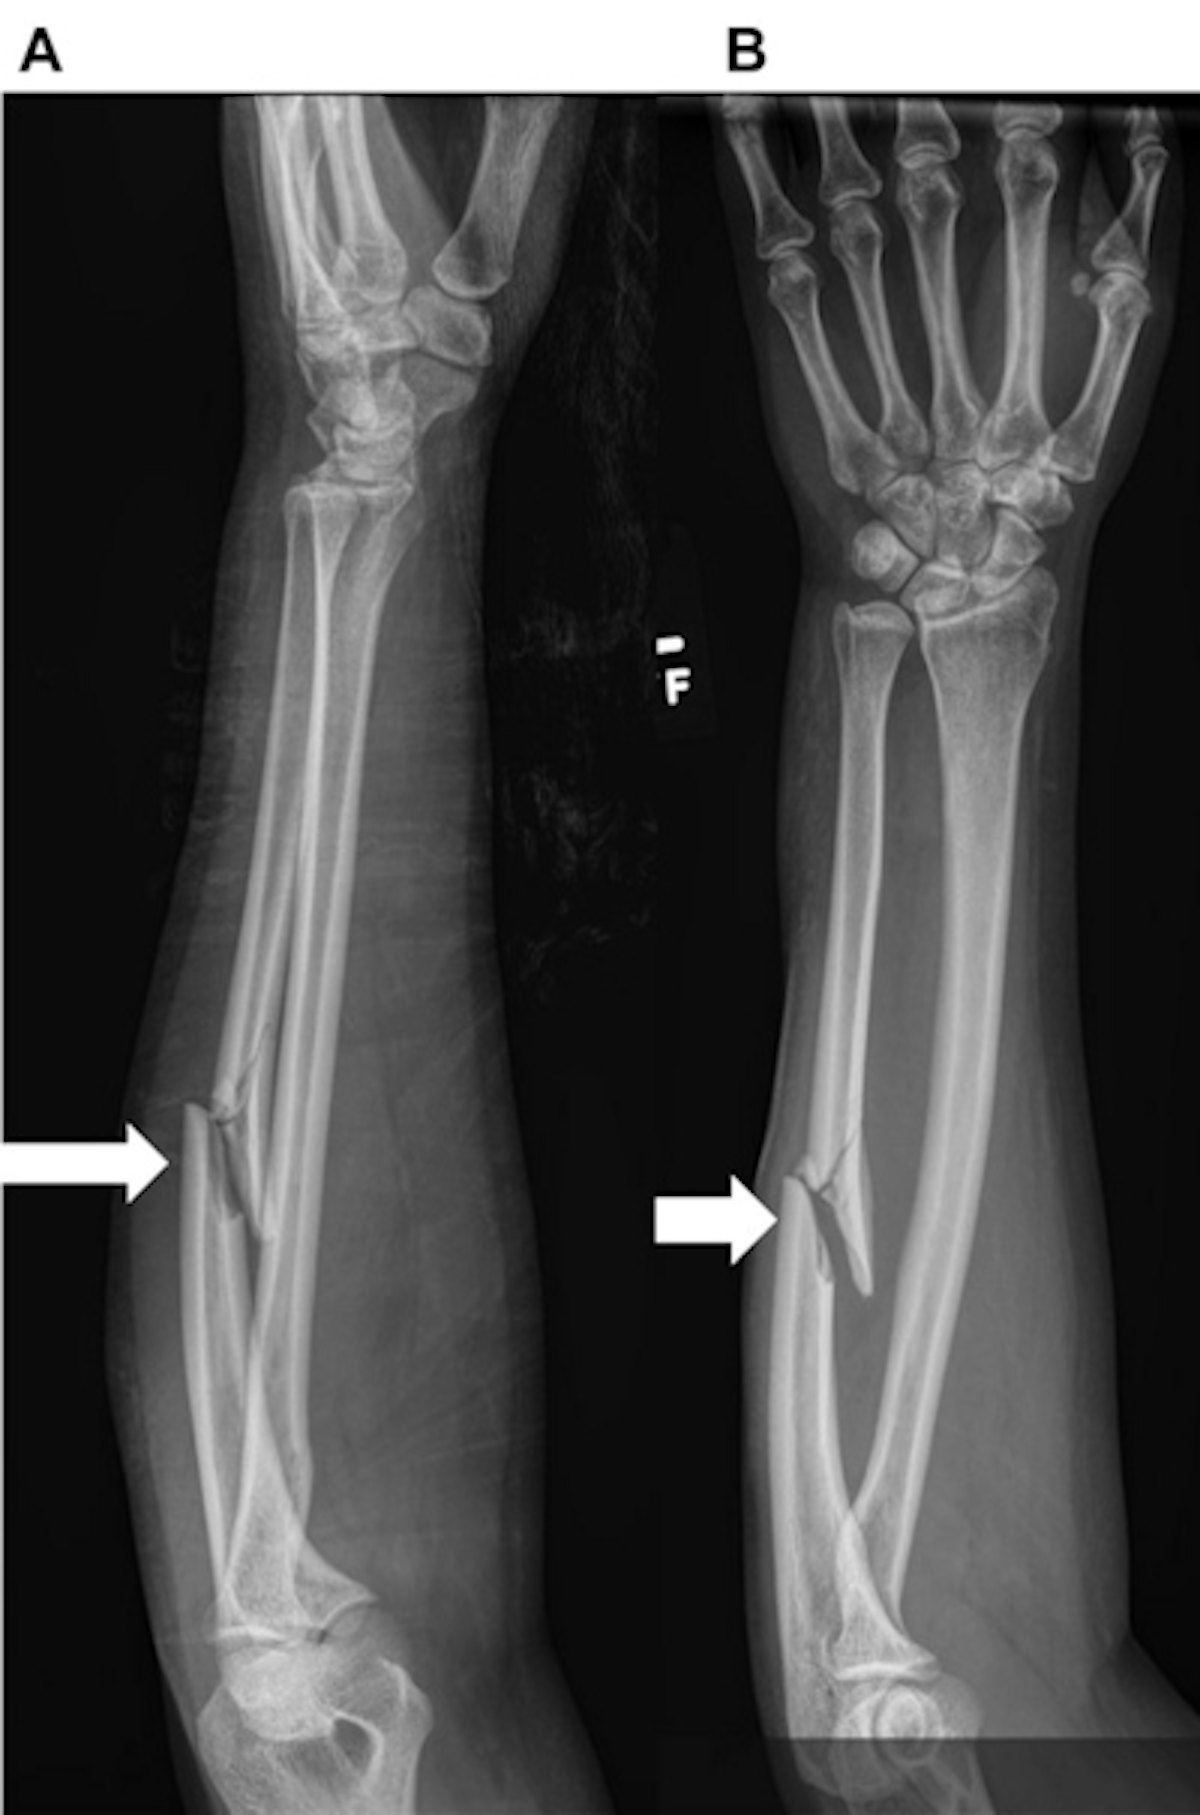 ulna bone fracture